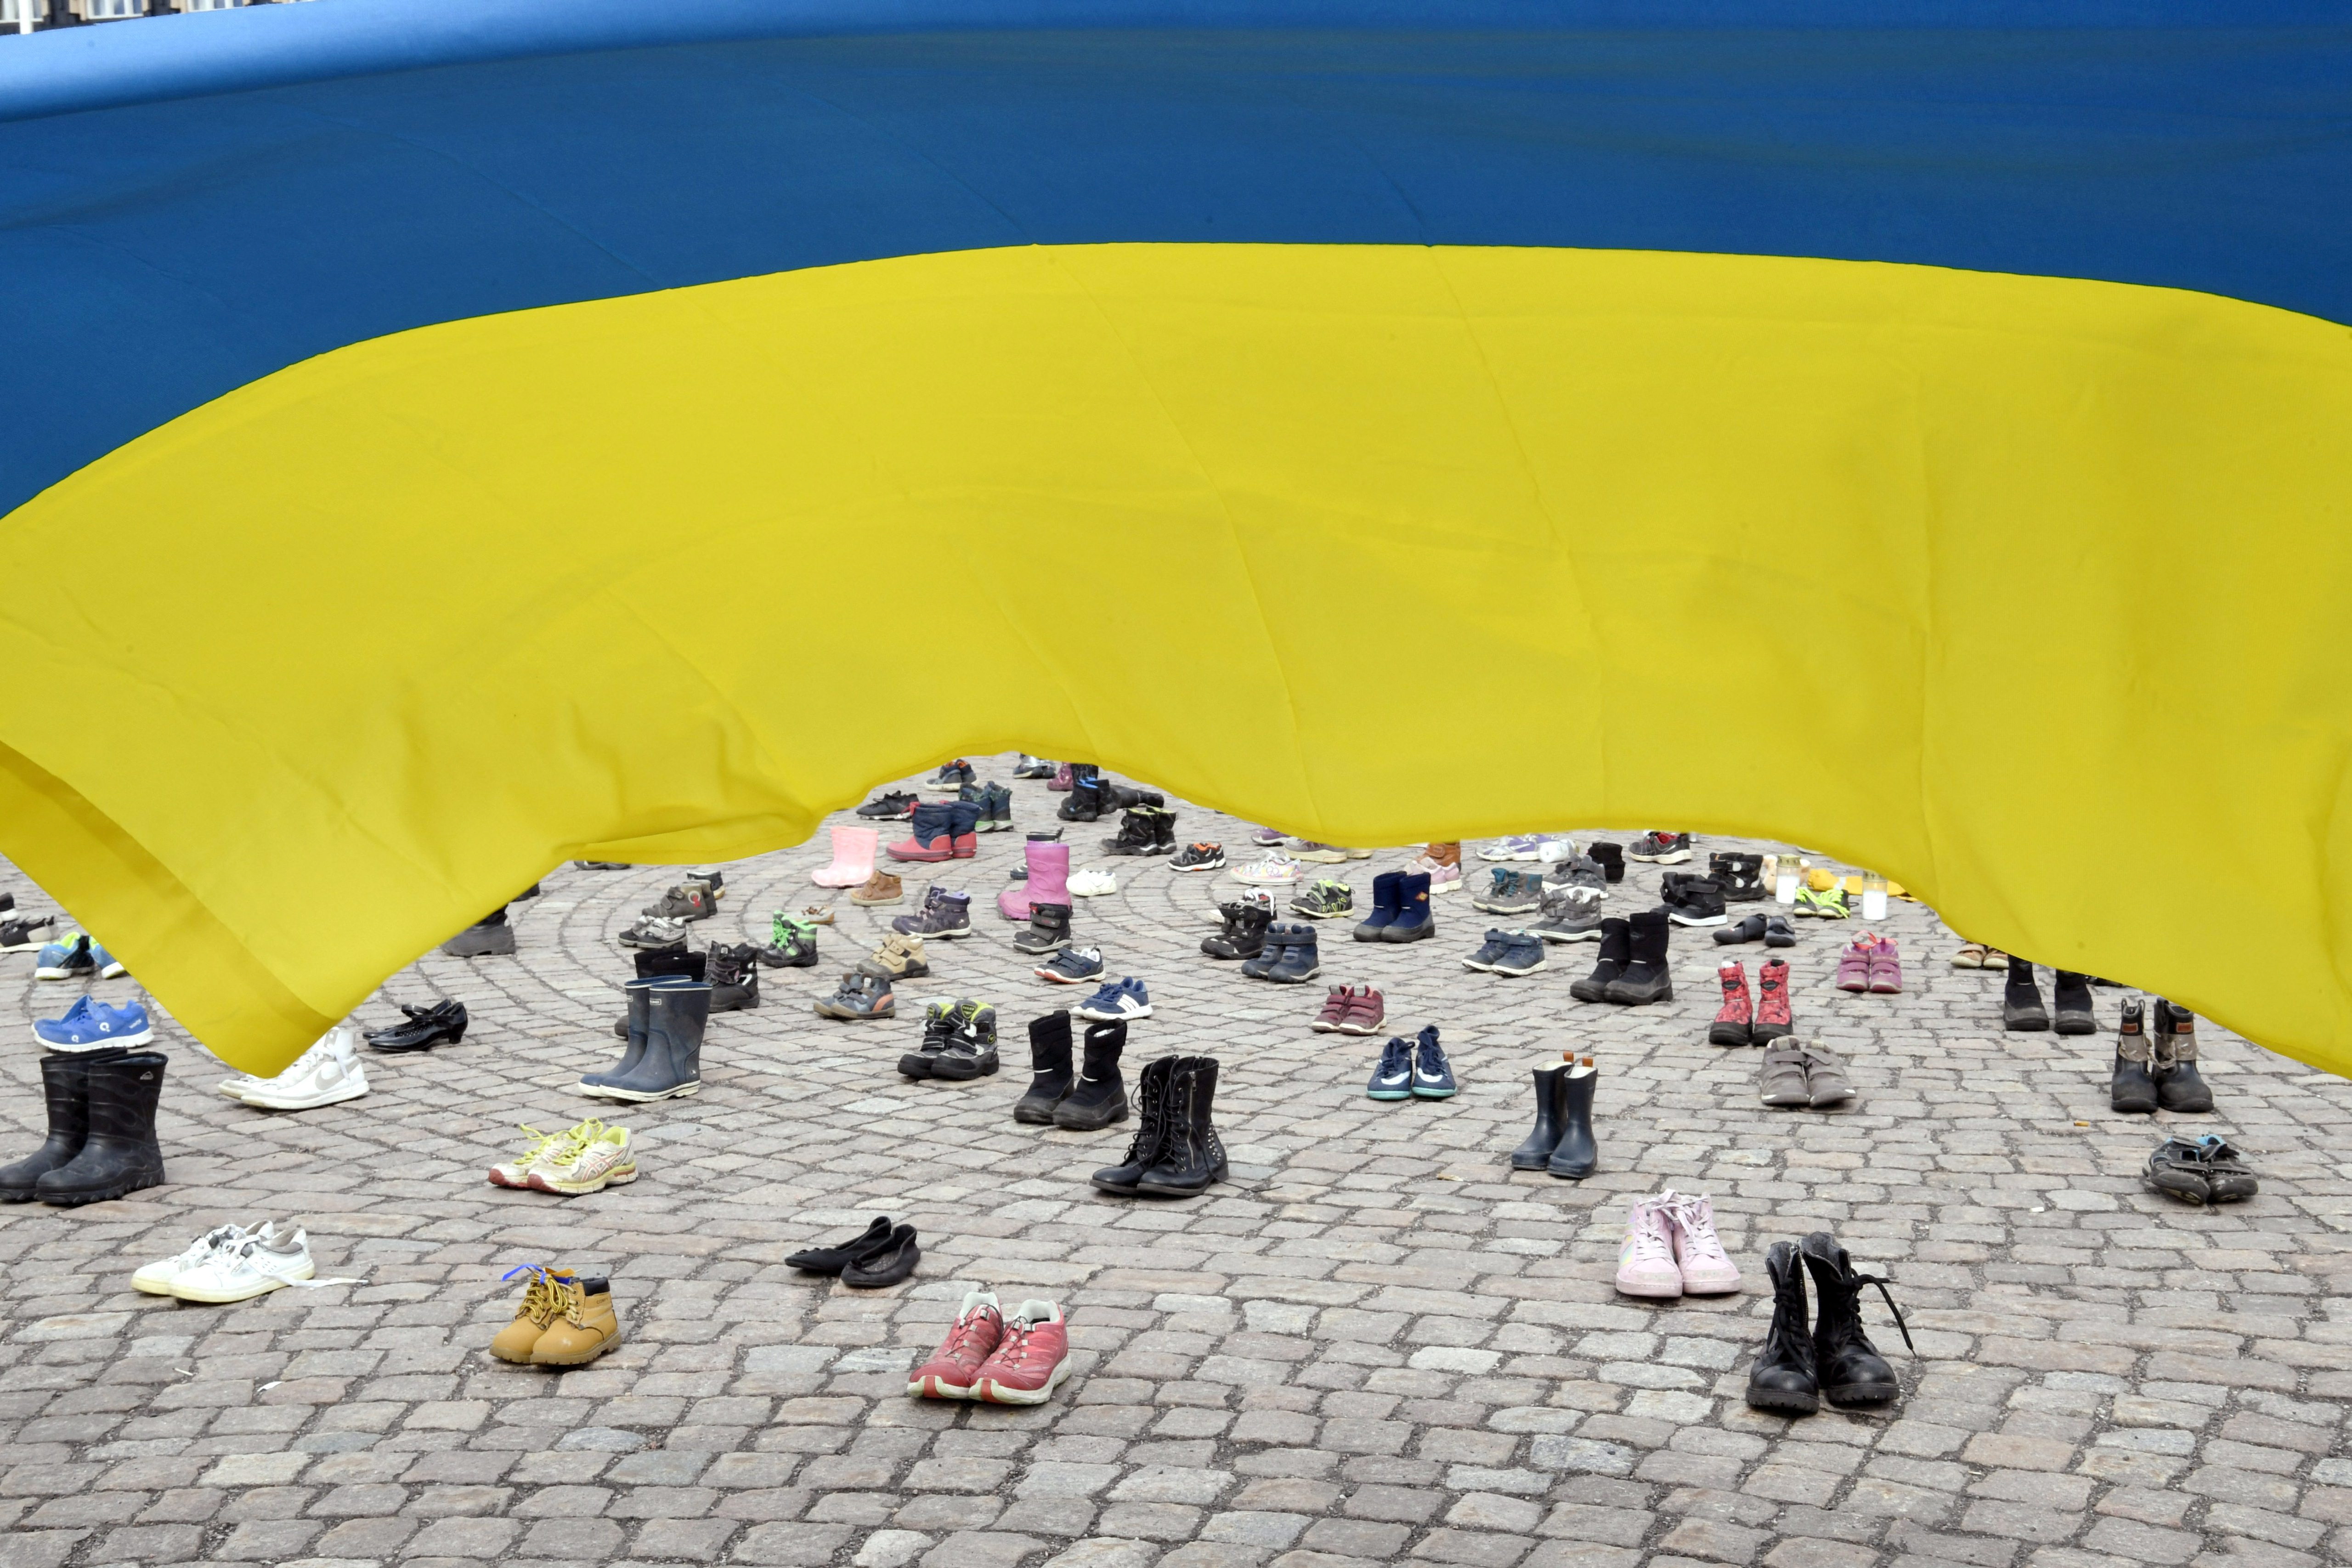 Zapatos, botas y velas se colocan durante una manifestación organizada por la Asociación Ucraniana en Finlandia para honrar la memoria de los niños muertos en medio de la invasión rusa en la ciudad ucraniana de Mariupol, en Helsinki, Finlandia, el 10 de abril de 2022. Lehtikuva/Jussi Nukari vía REUTERS